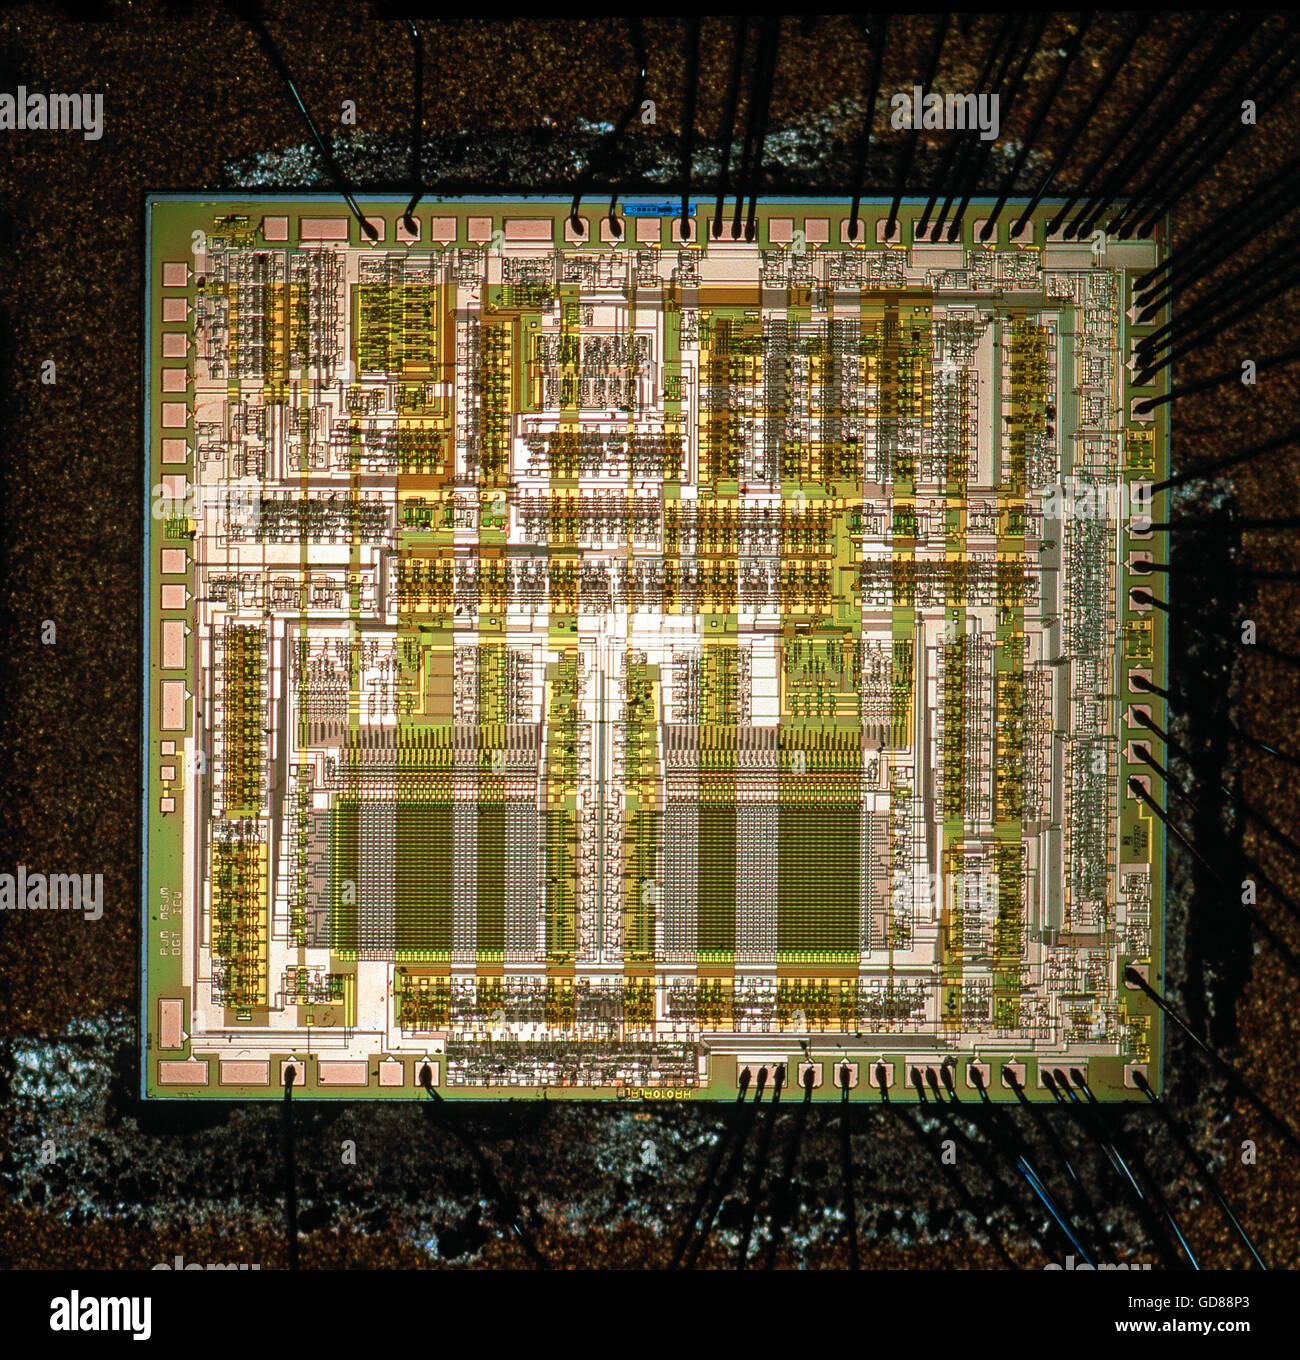 Semi conduttore chip di silicio del circuito integrato Foto Stock